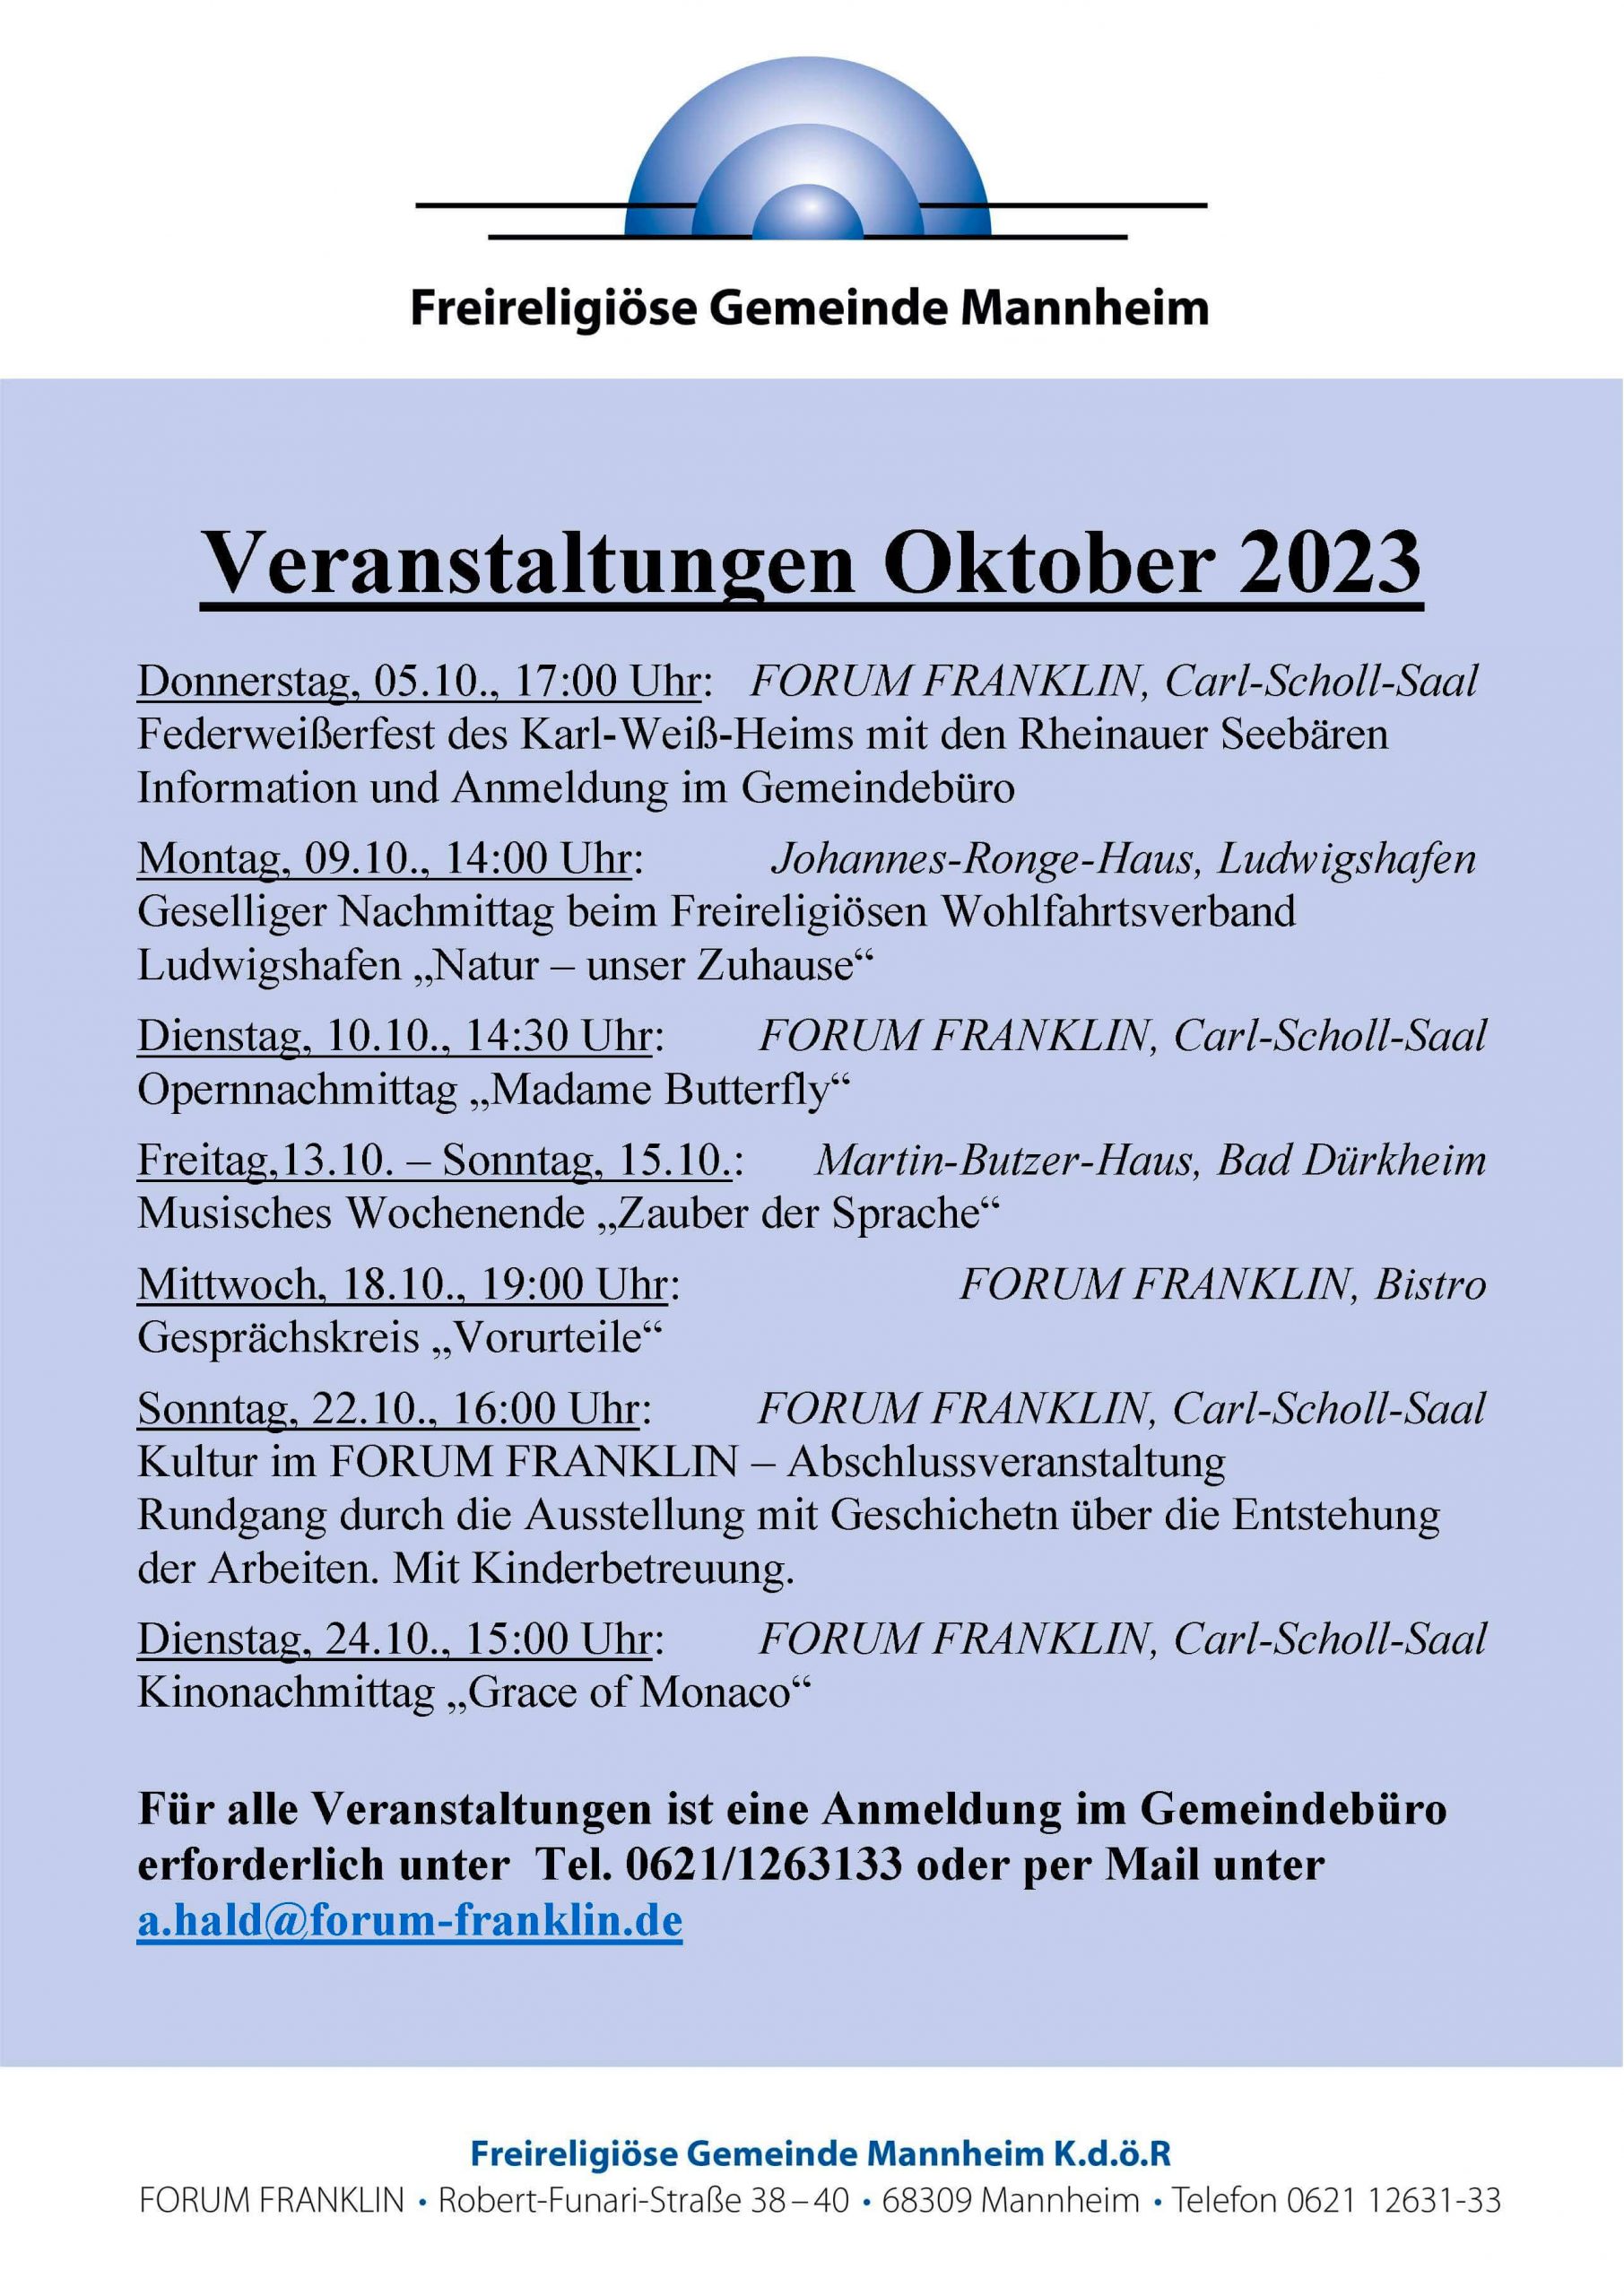 FORUM FRANKLIN Veranstaltungen Oktober 2023